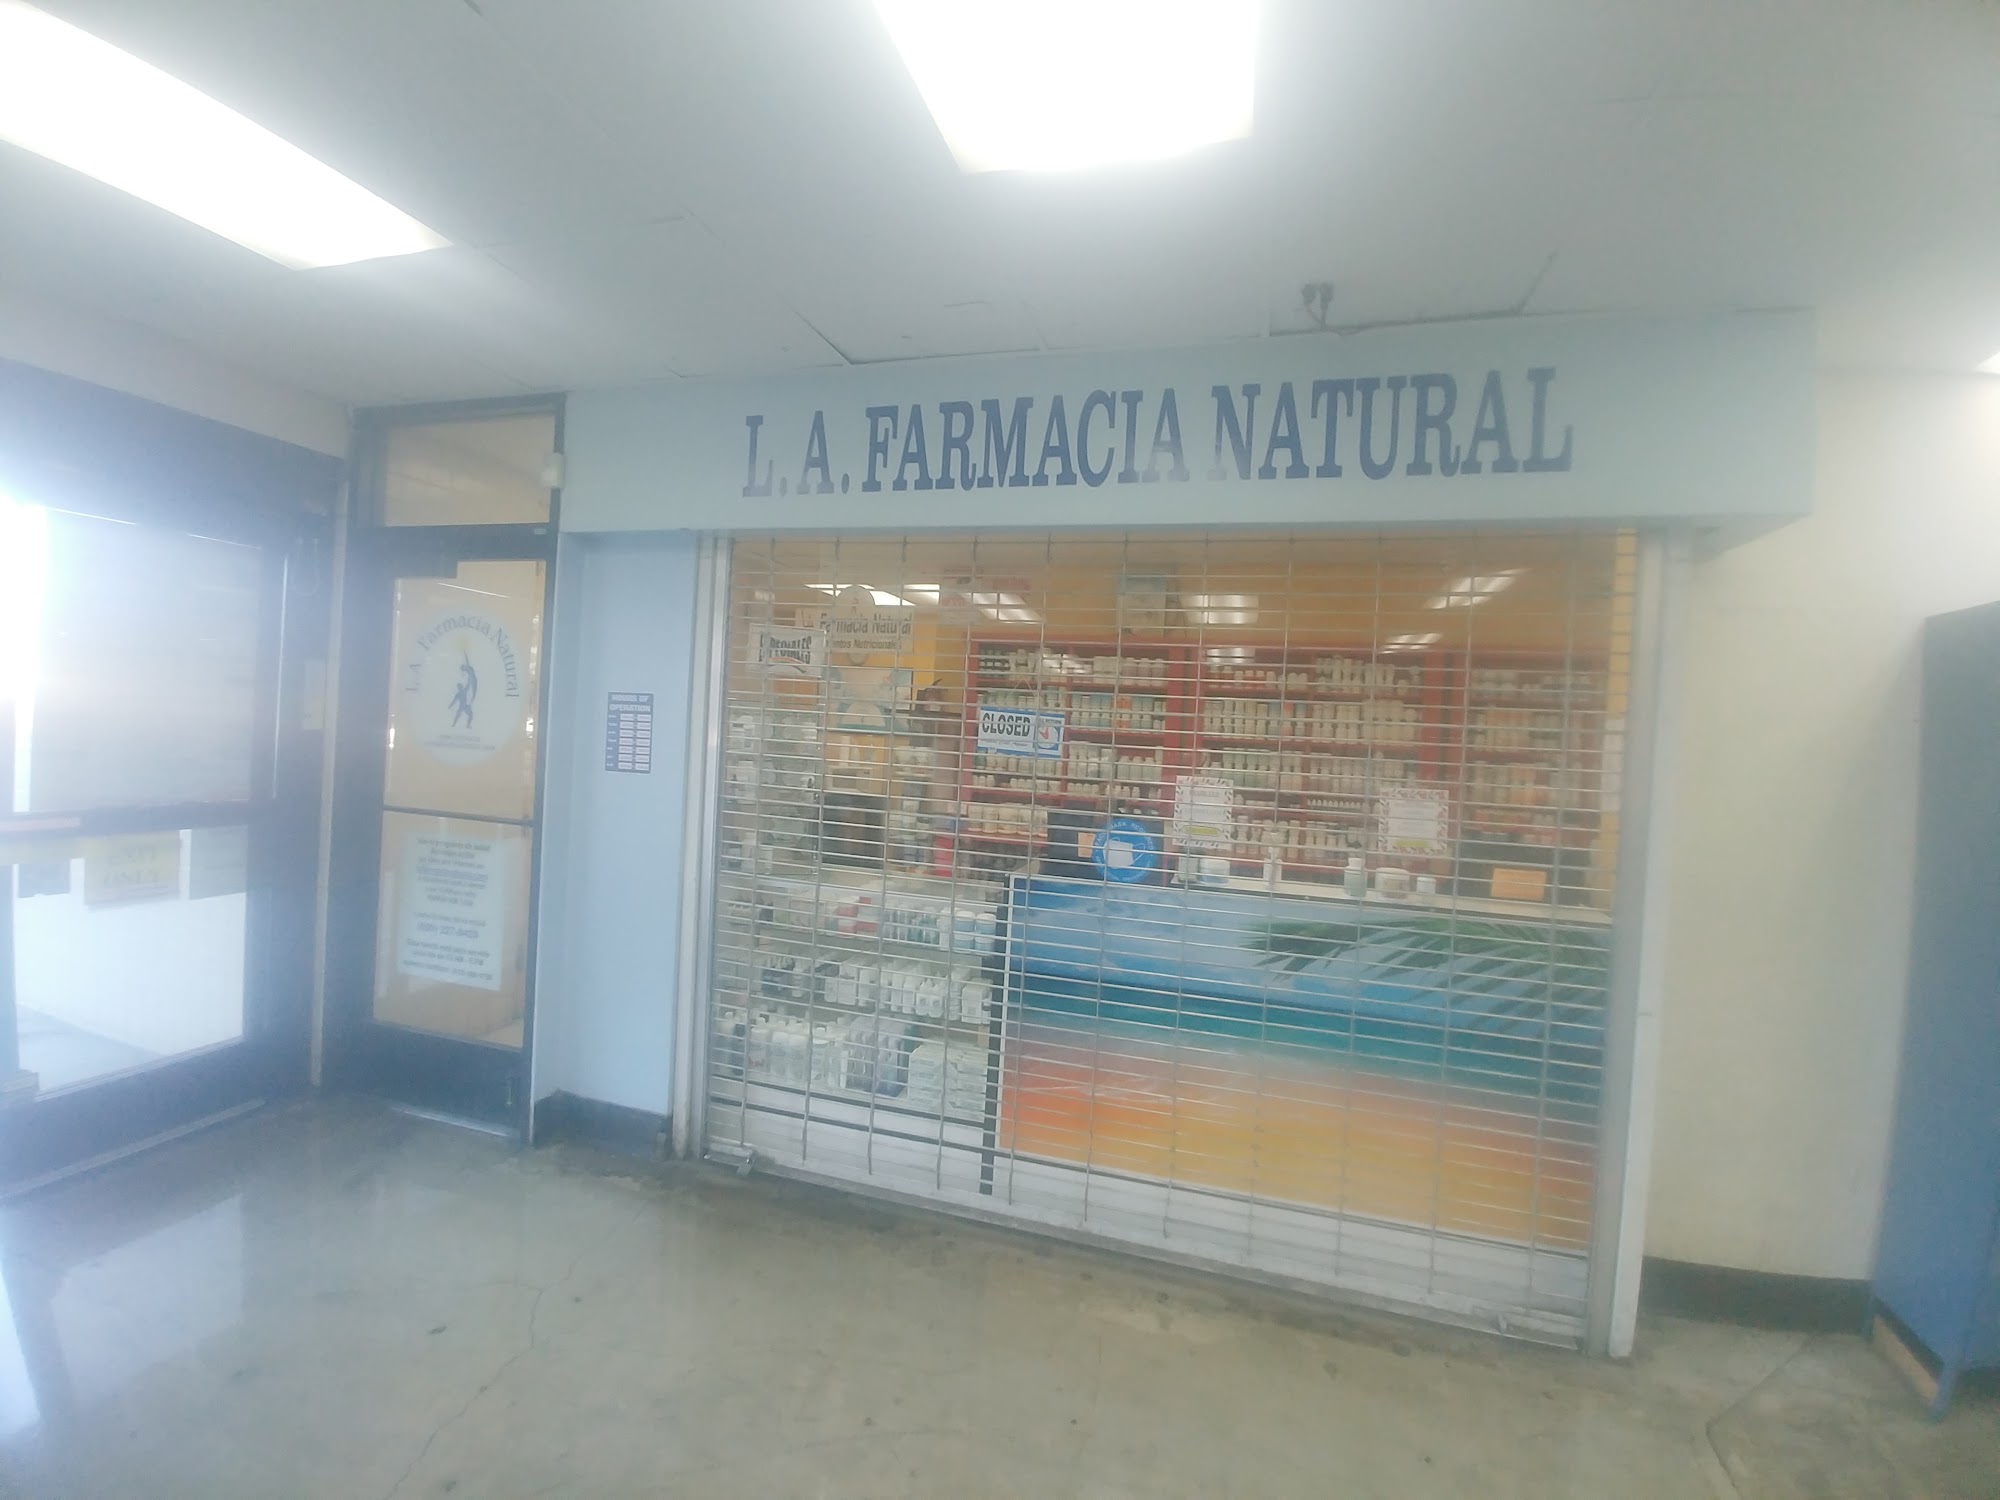 L.A. Farmacia Natural